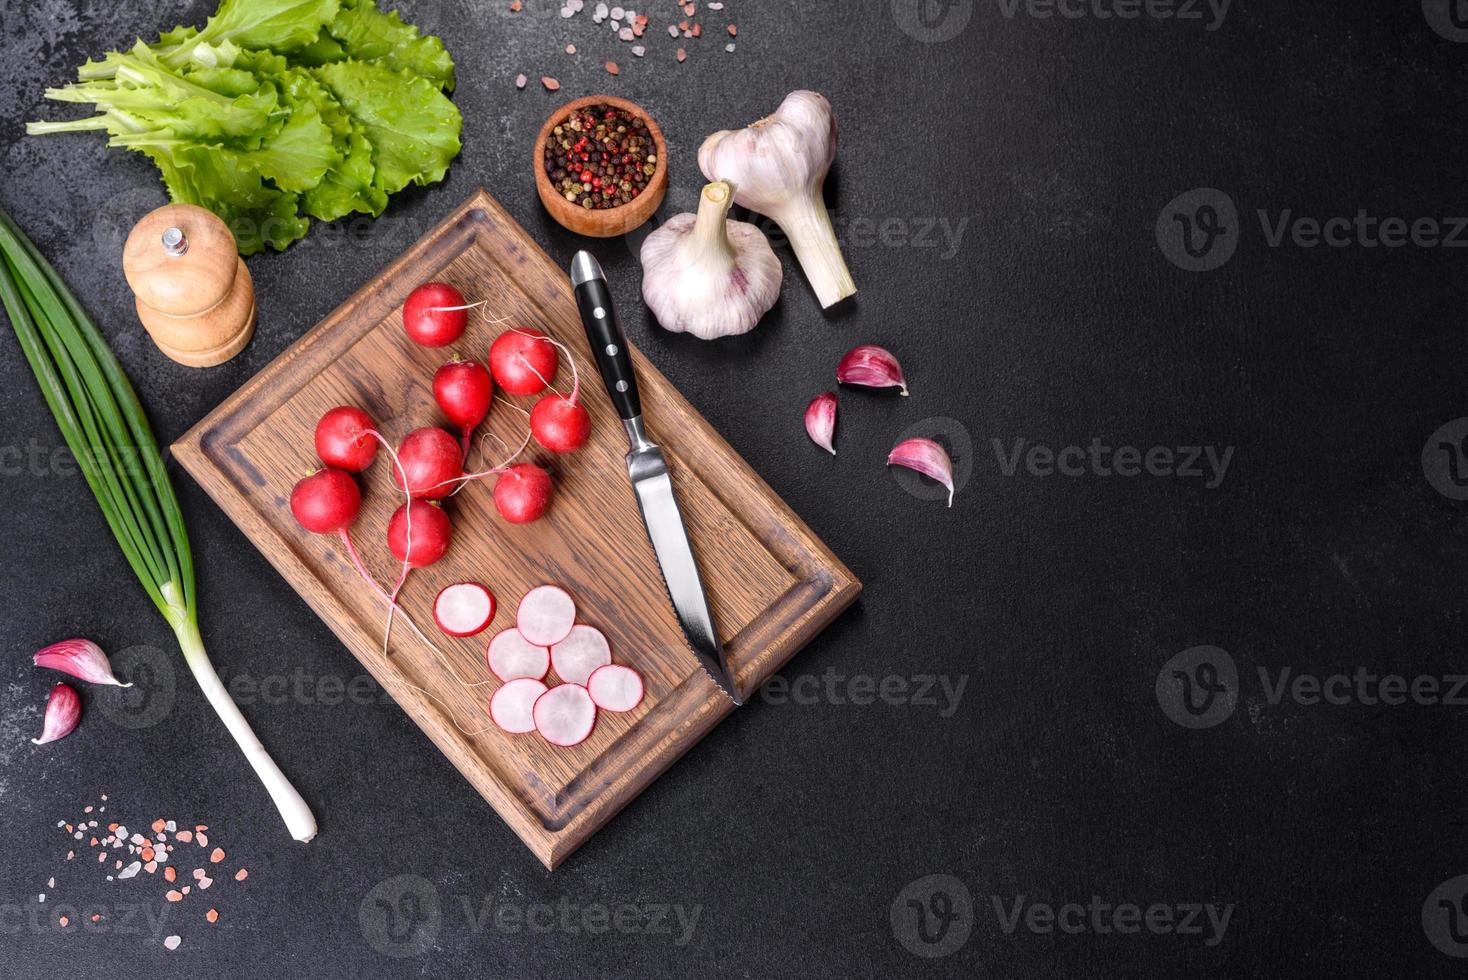 délicieux radis rouge frais comme ingrédient pour faire une salade de printemps sur une planche à découper en bois photo